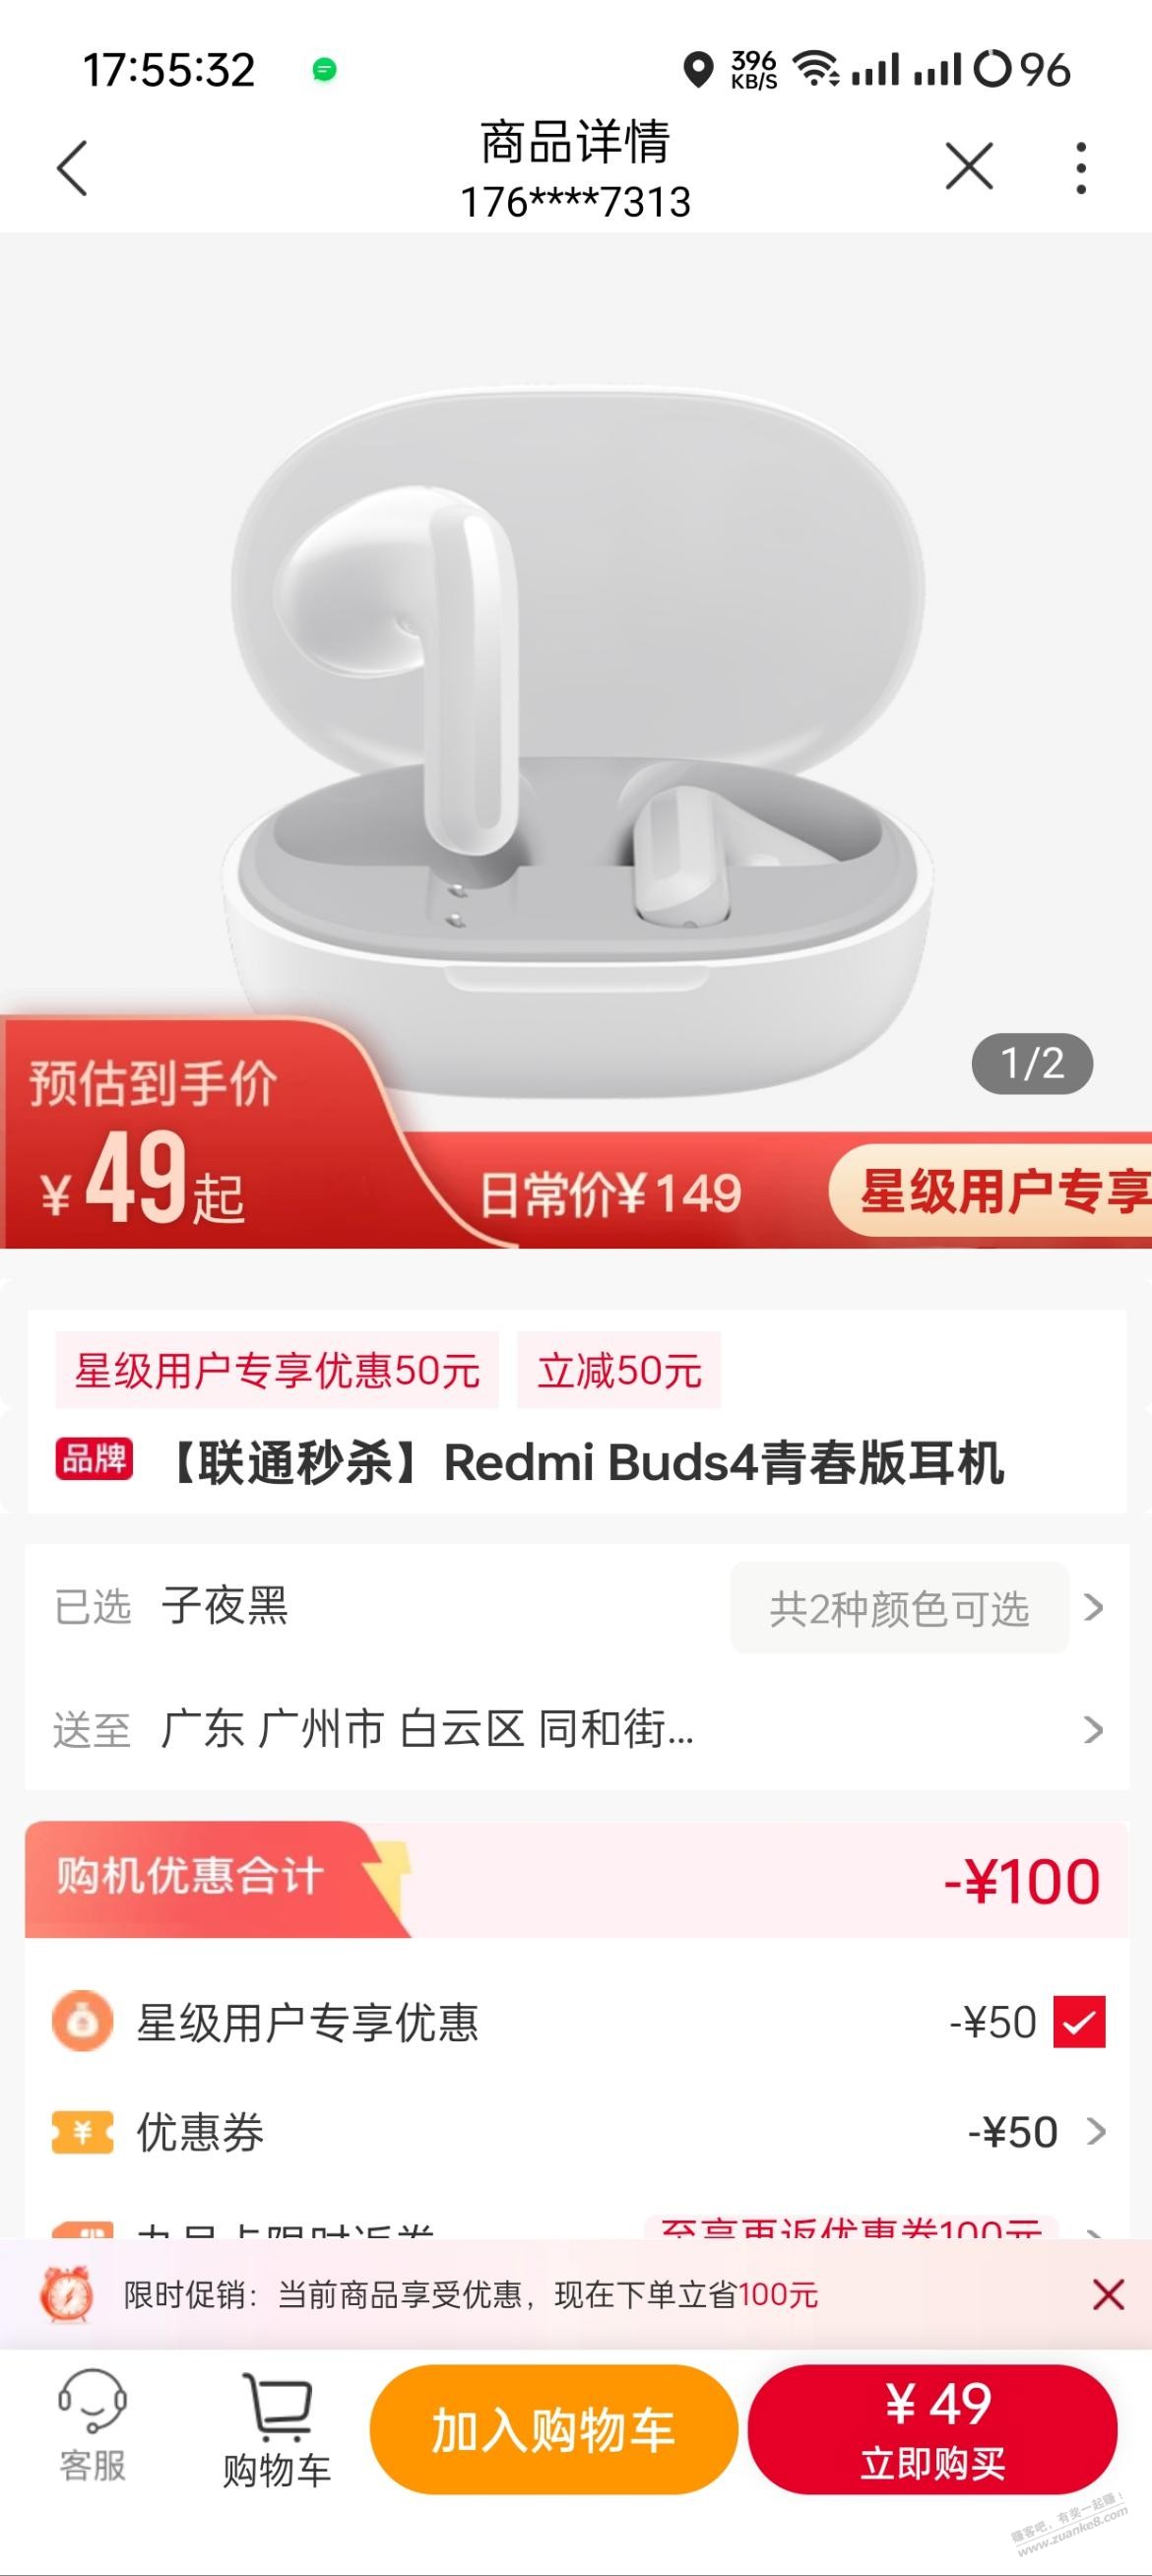 联通49买红米耳机buds4青春版-惠小助(52huixz.com)